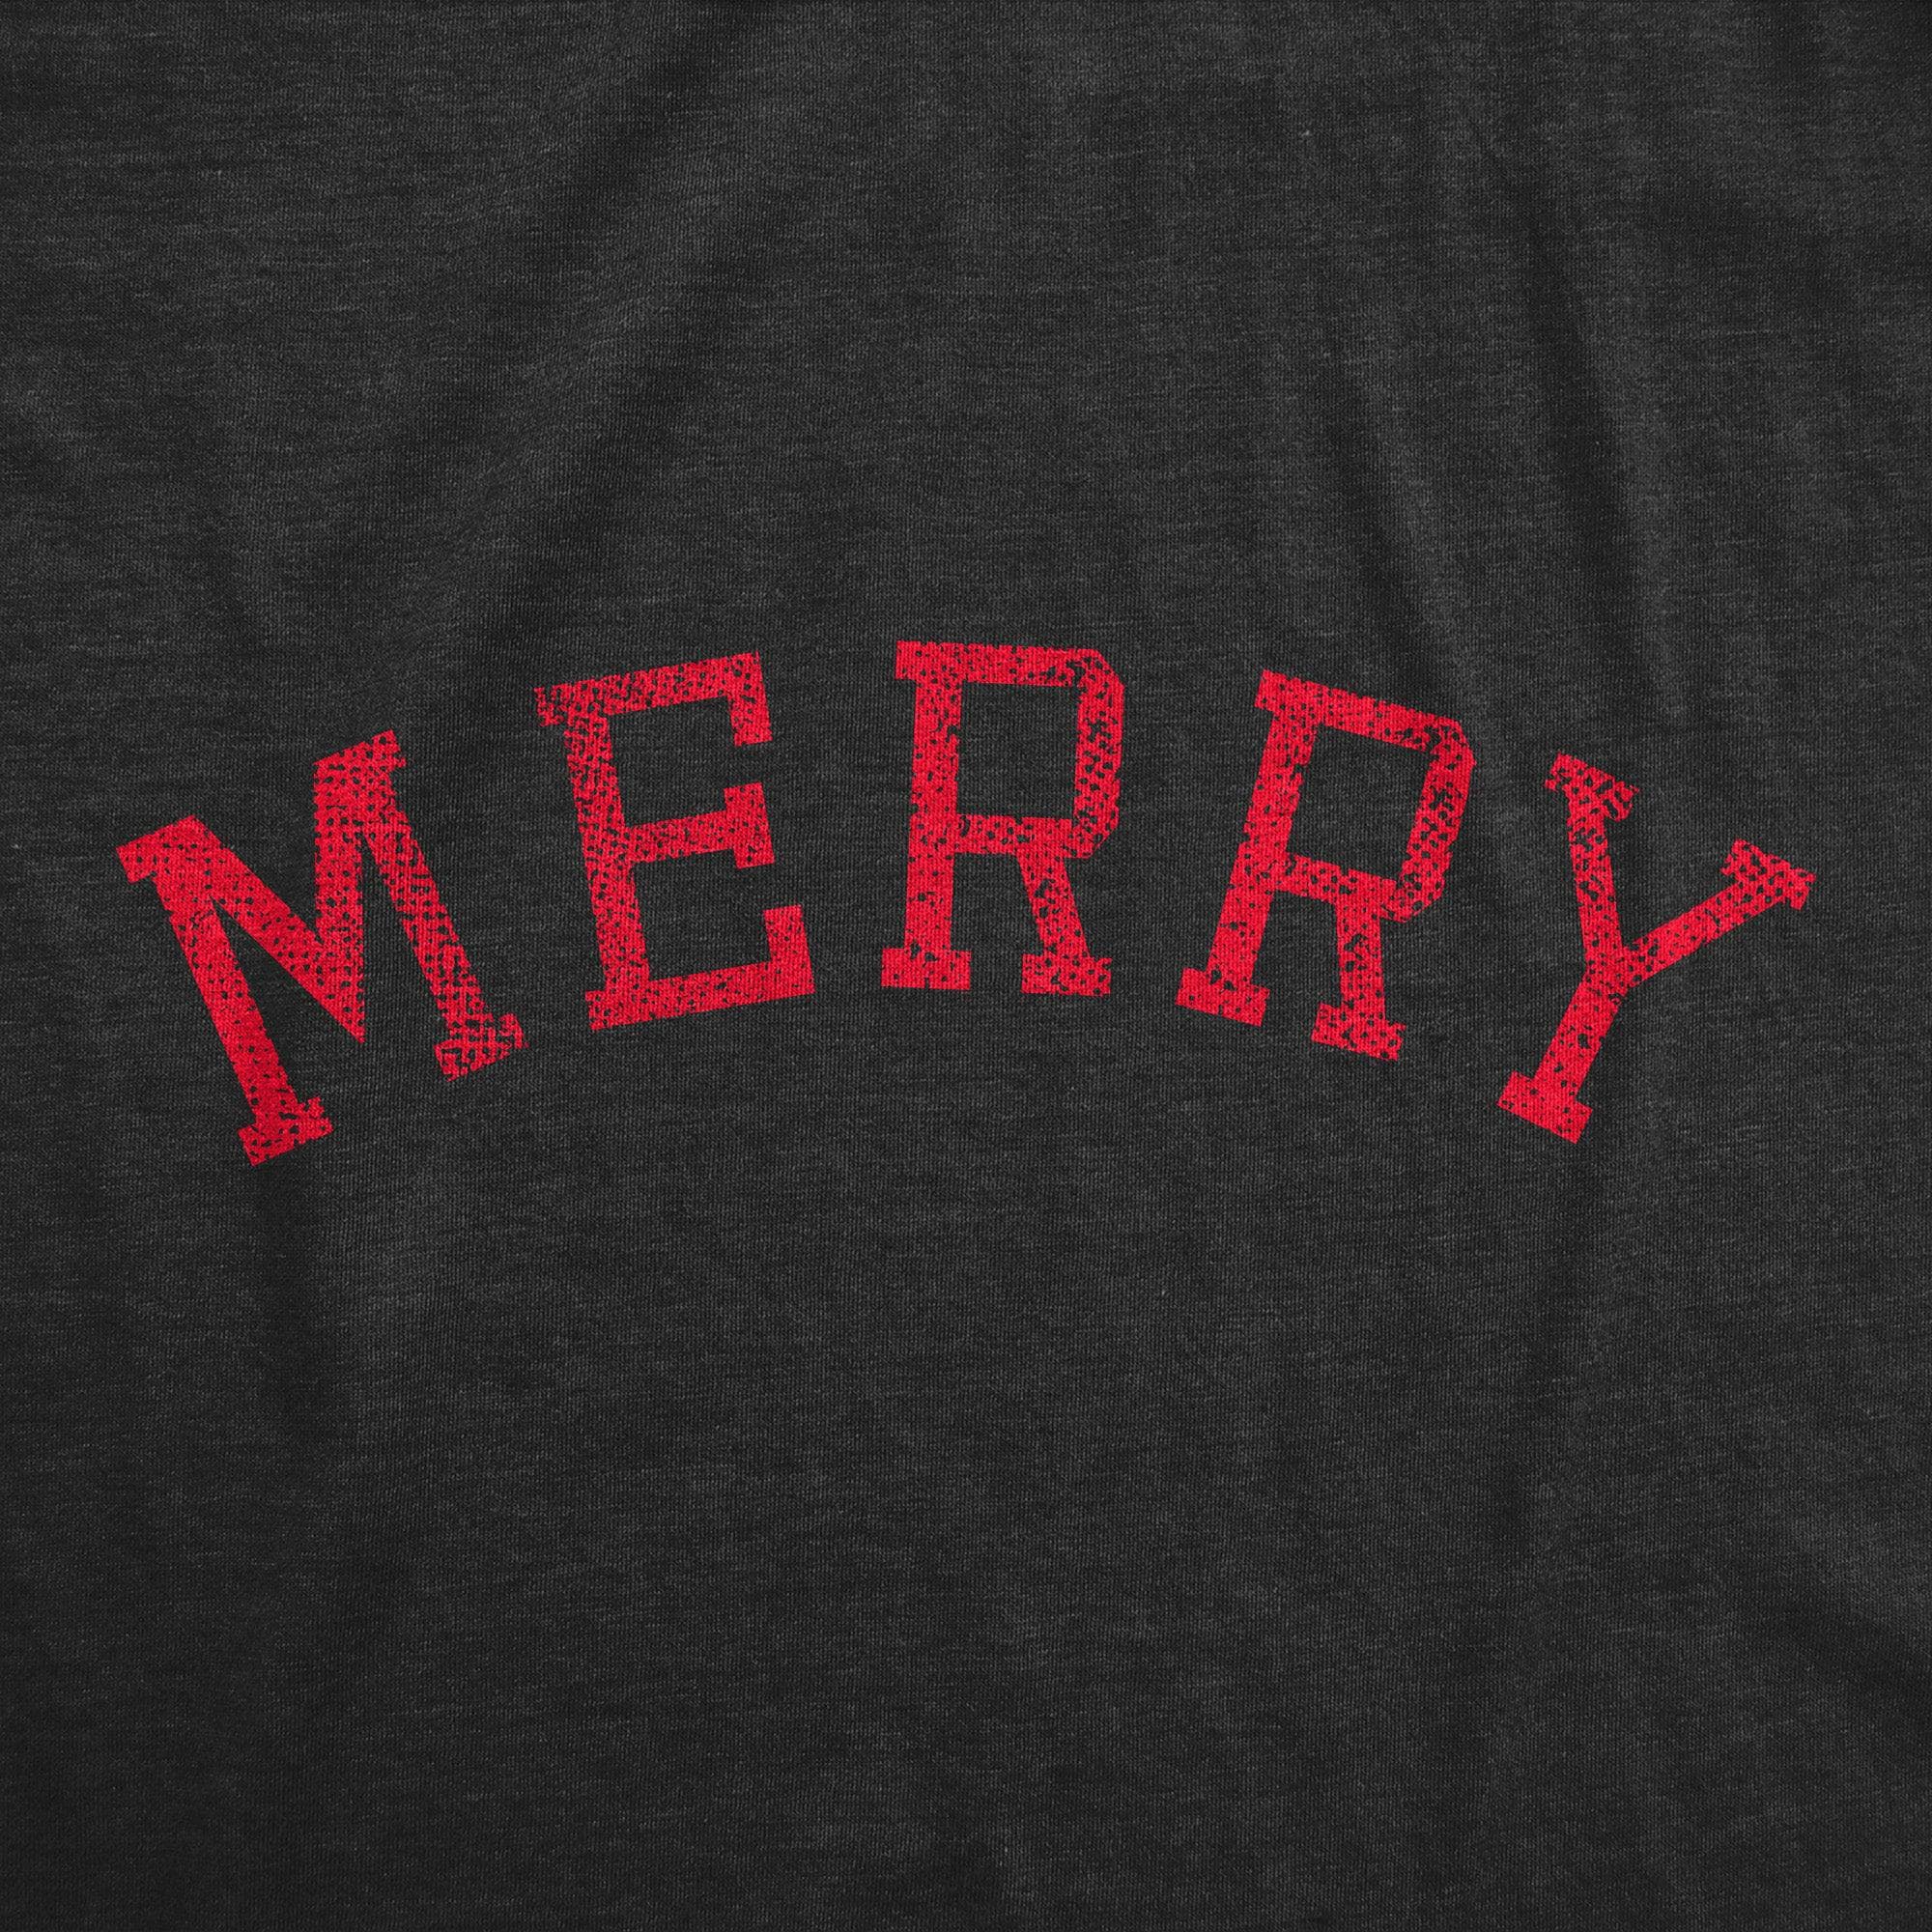 Merry Men's Tshirt  -  Crazy Dog T-Shirts